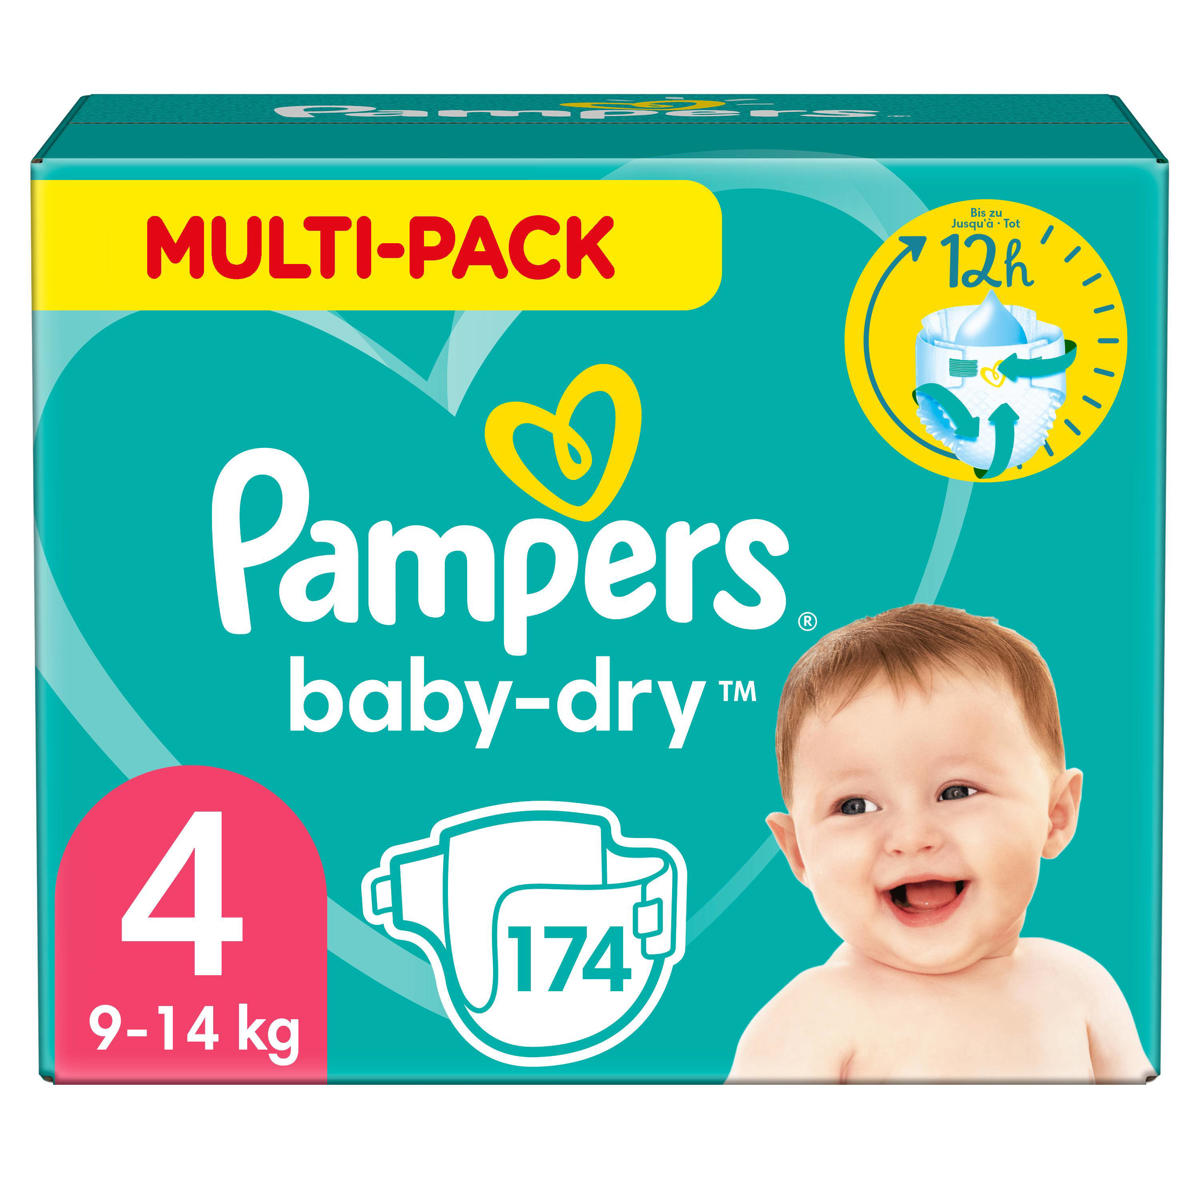 Absoluut in verlegenheid gebracht Goot Pampers Baby-Dry Luiers - Maat 4 (9-14 kg) - 174 stuks - Multi-Pack |  wehkamp